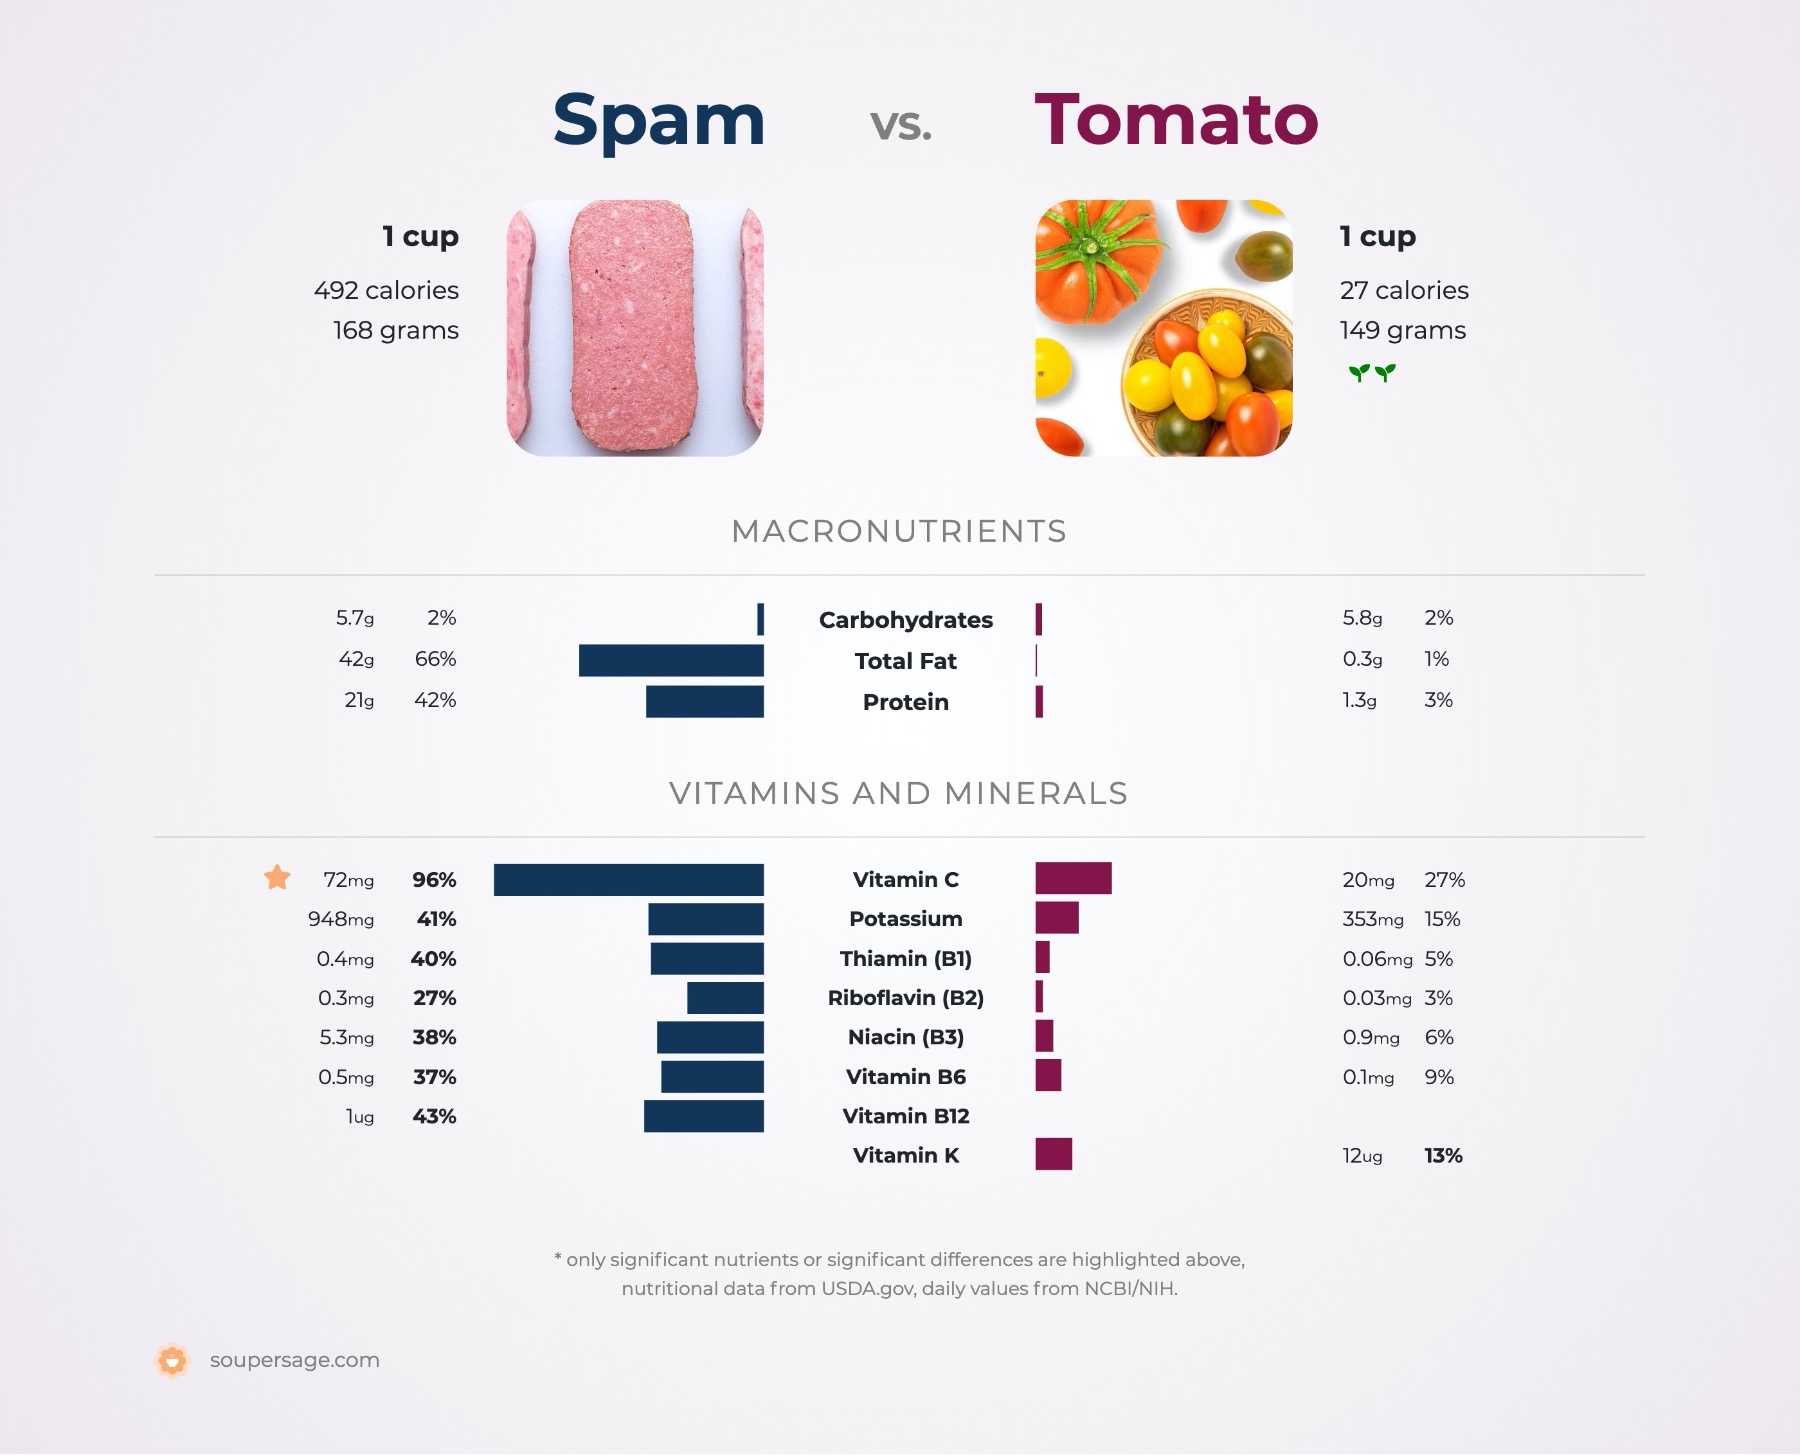 nutrition comparison of spam vs. tomato